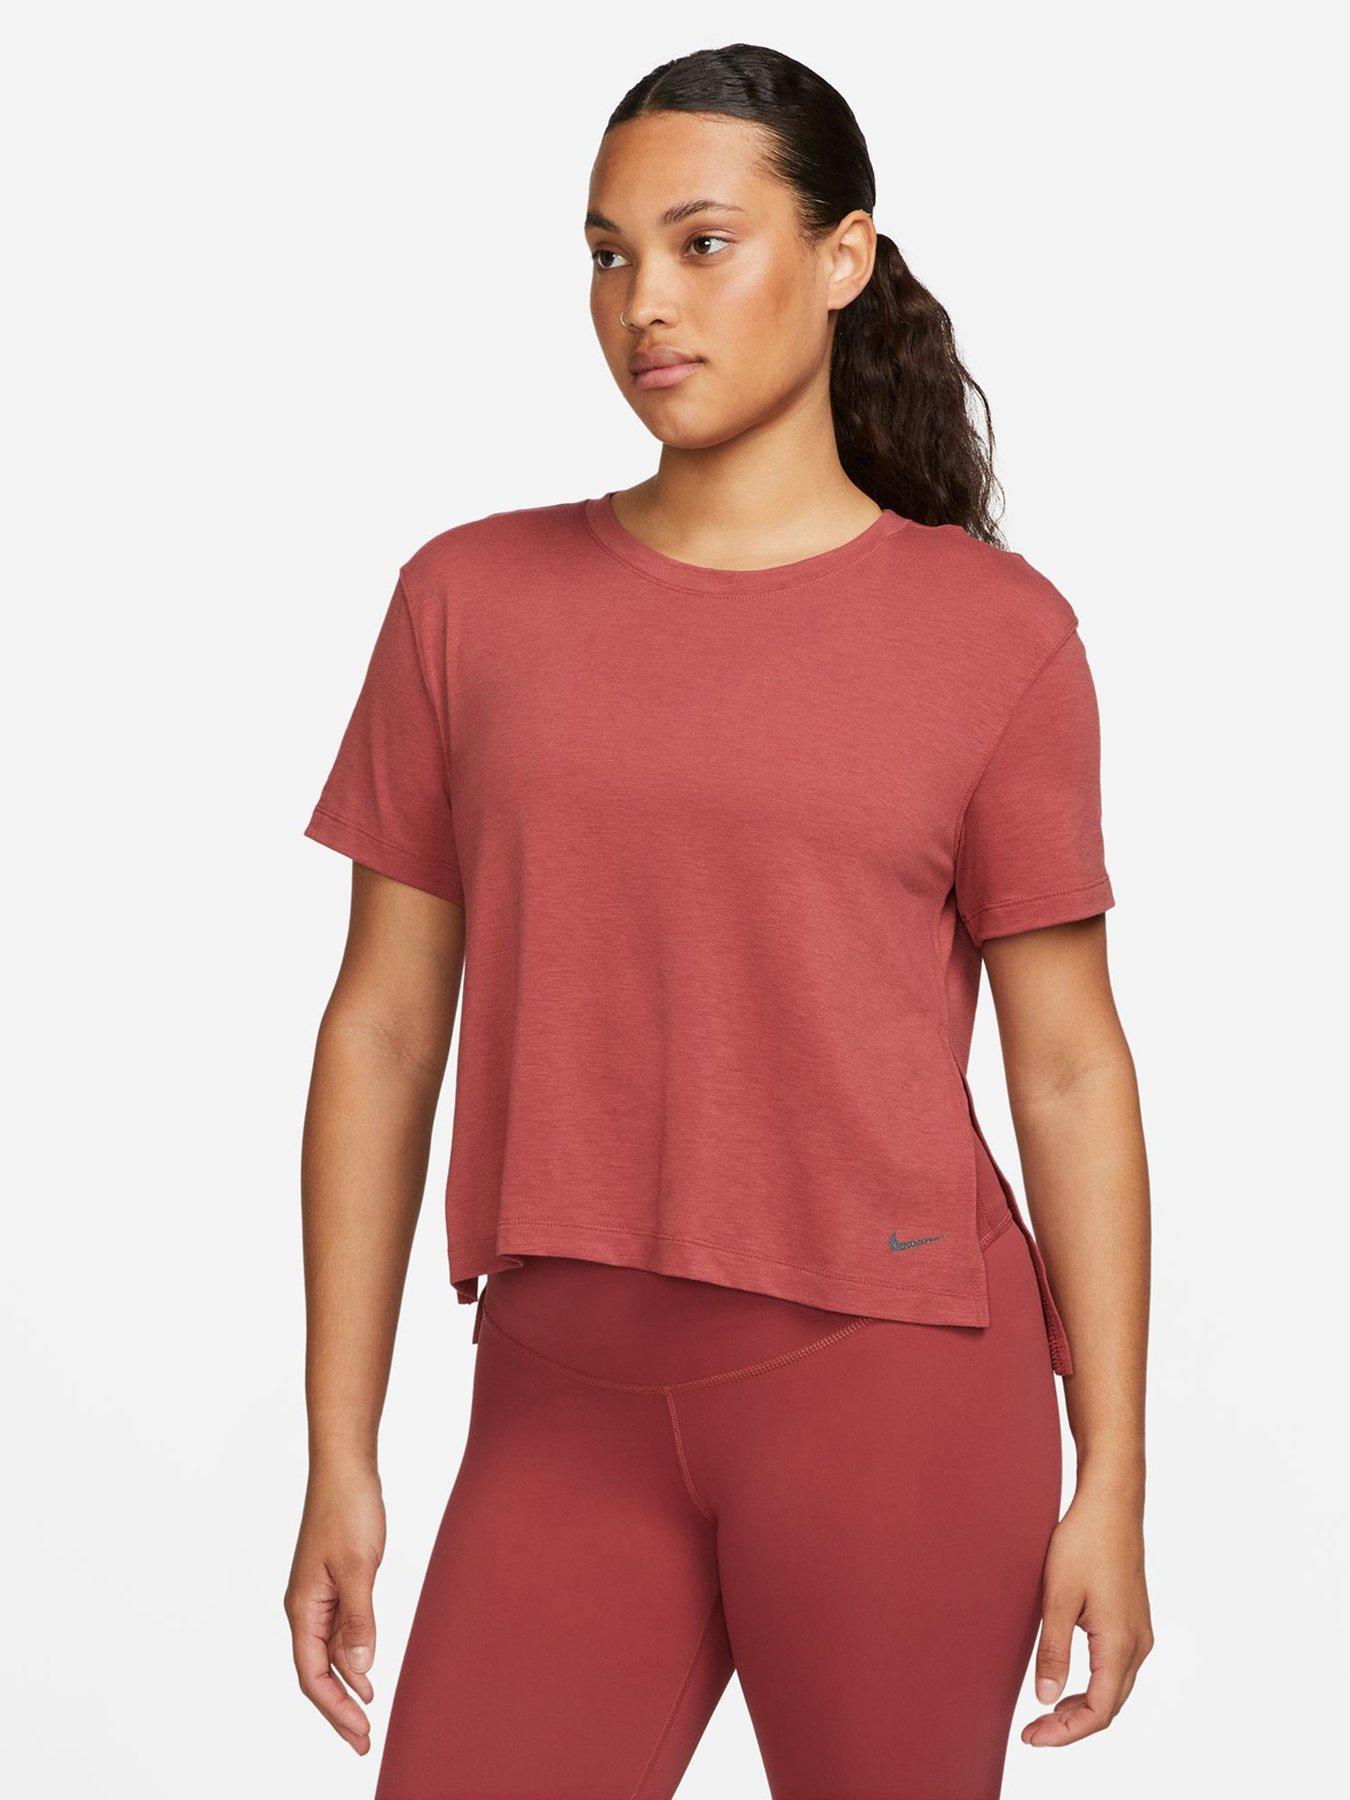 Nike Yoga Dri-Fit Black Women's Short Sleeve T-Shirt